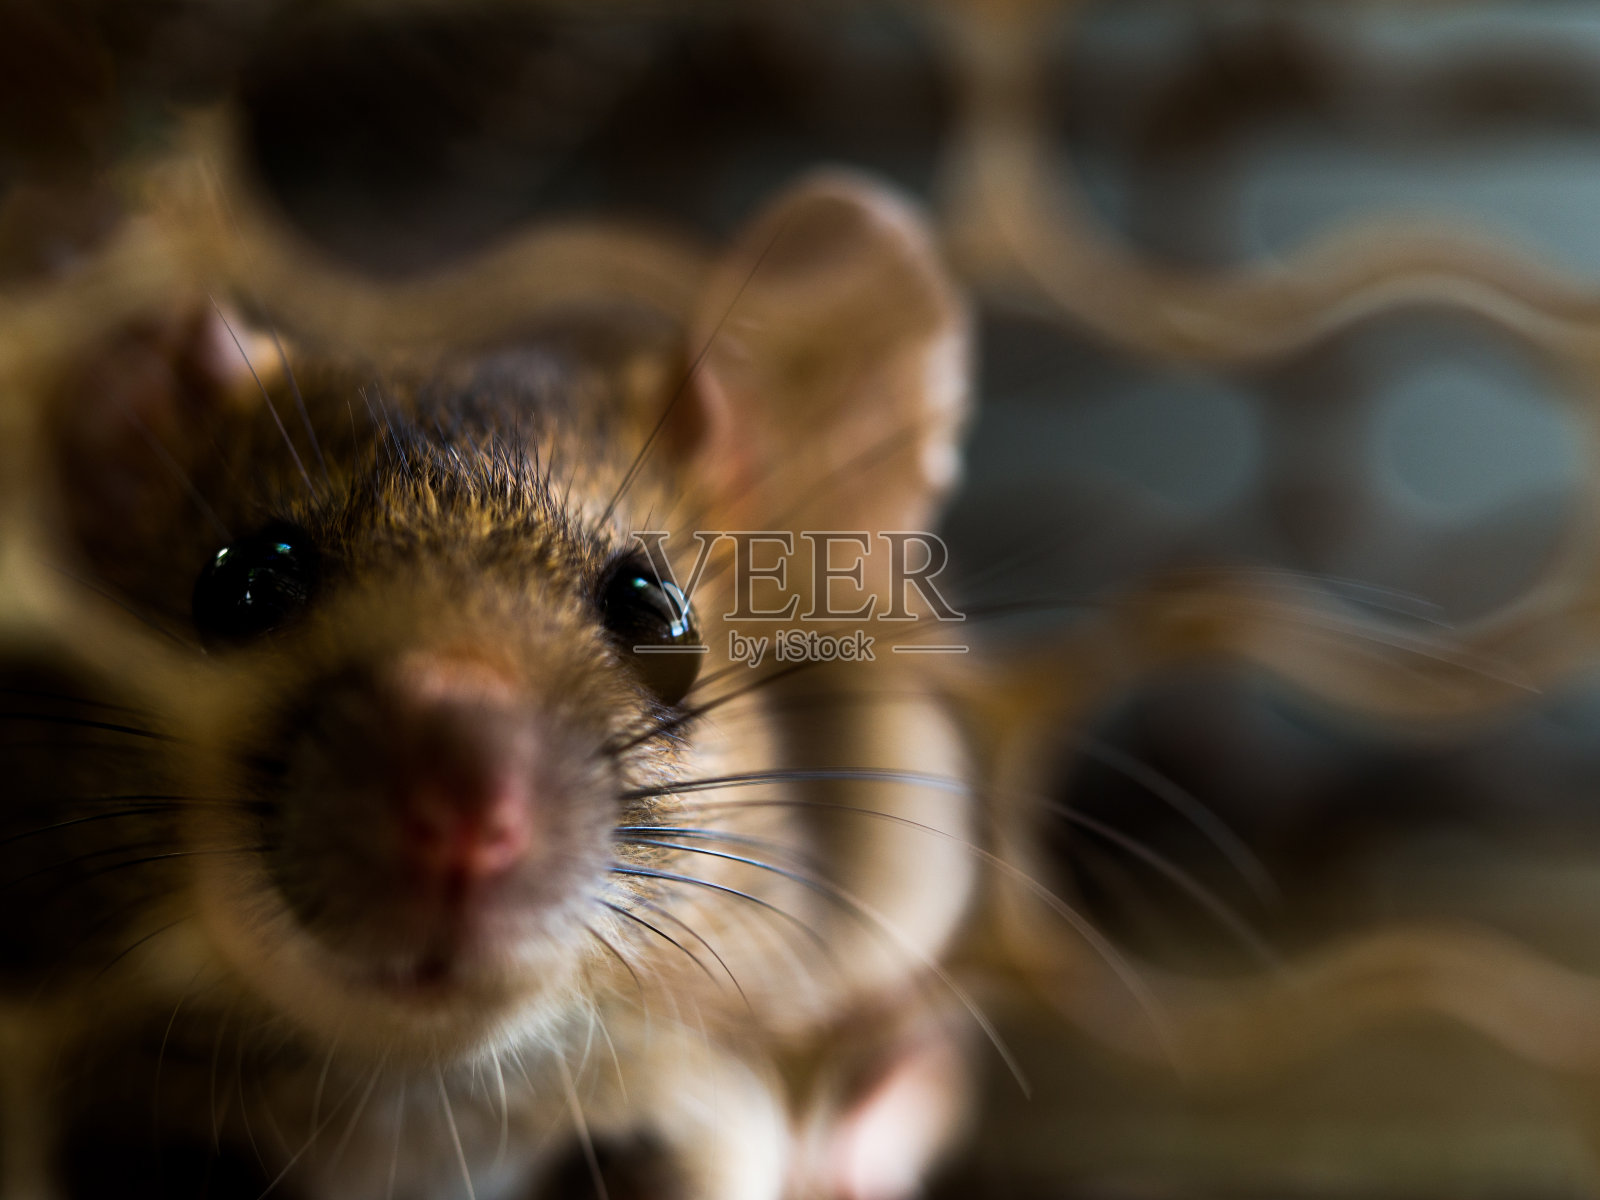 柔焦的老鼠在笼子里捉老鼠。老鼠会传染给人类如钩端螺旋体病鼠疫照片摄影图片